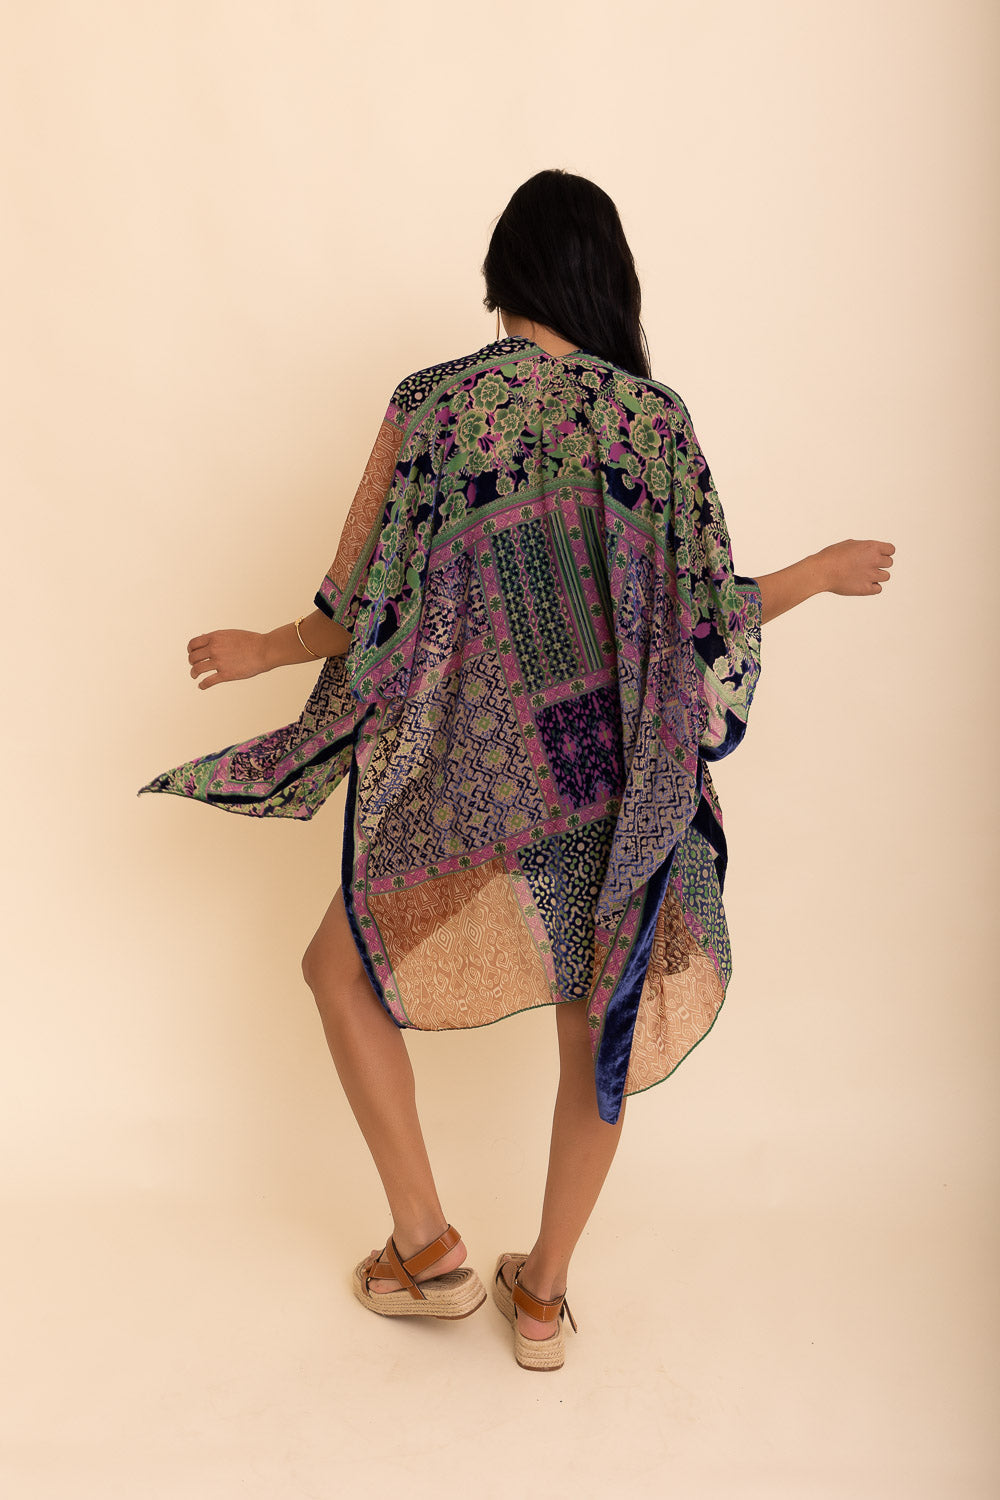 Leto Collection - Bohemian Burnout Velvet Kimono $63 – Thank you